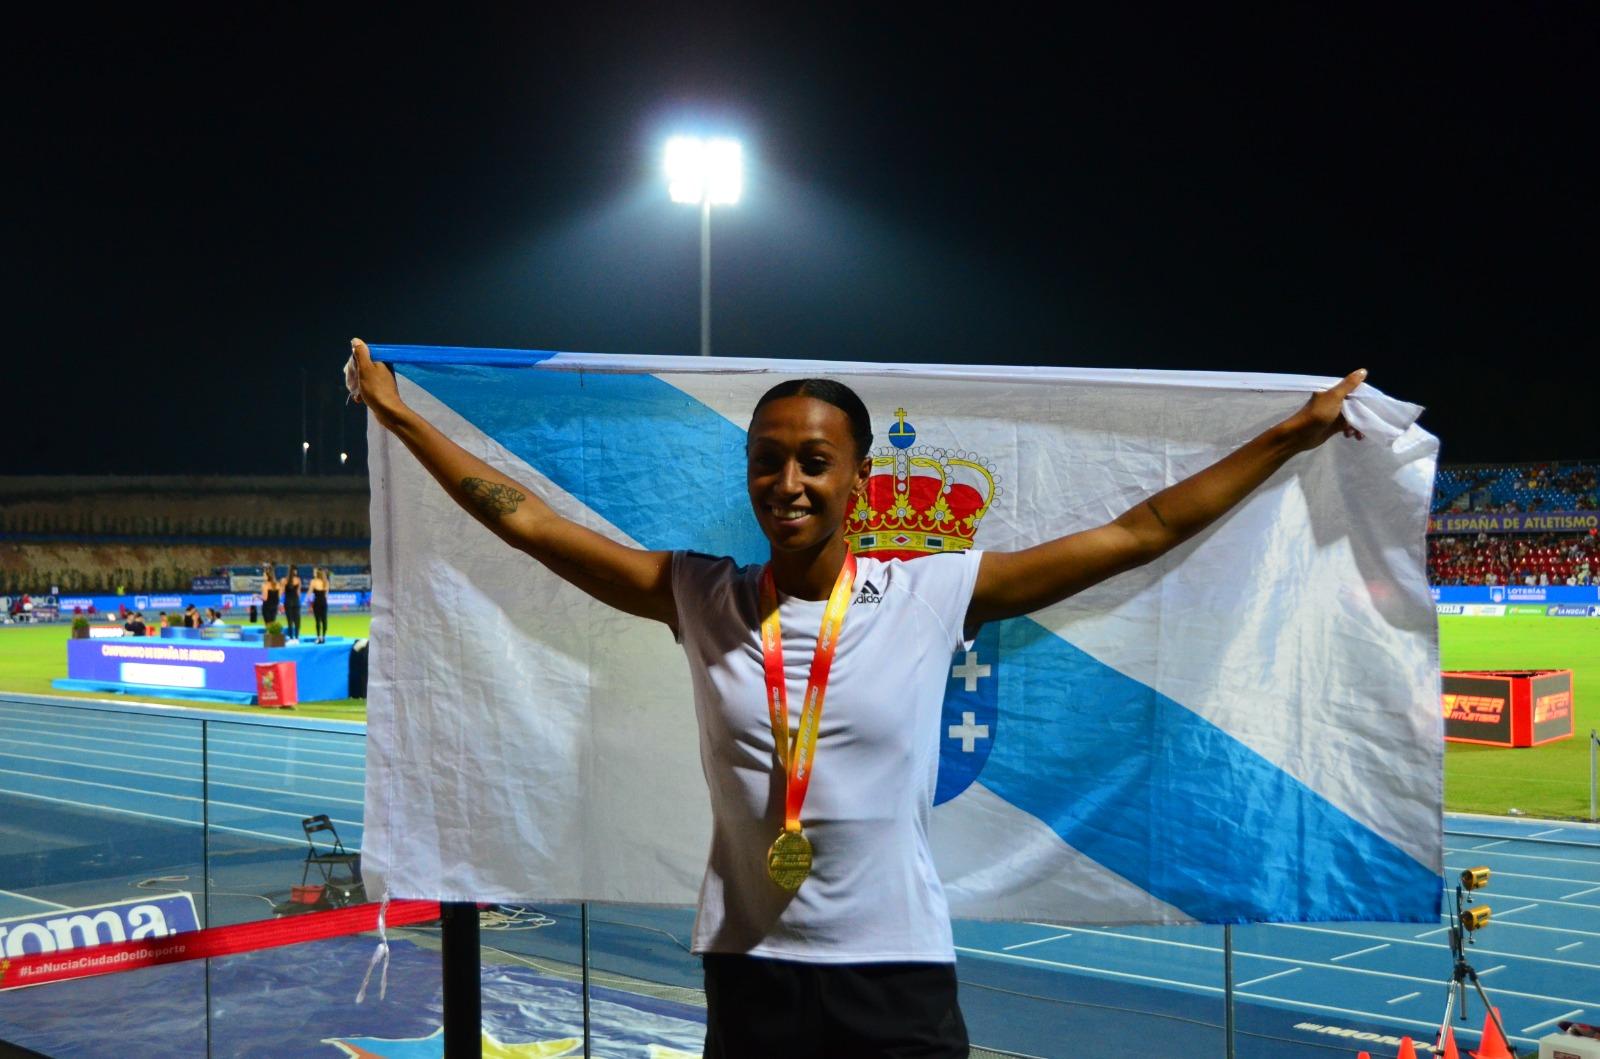 Peleteiro es la única medallista internacional del atletismo gallego y cuenta con 10 títulos nacionales absolutos